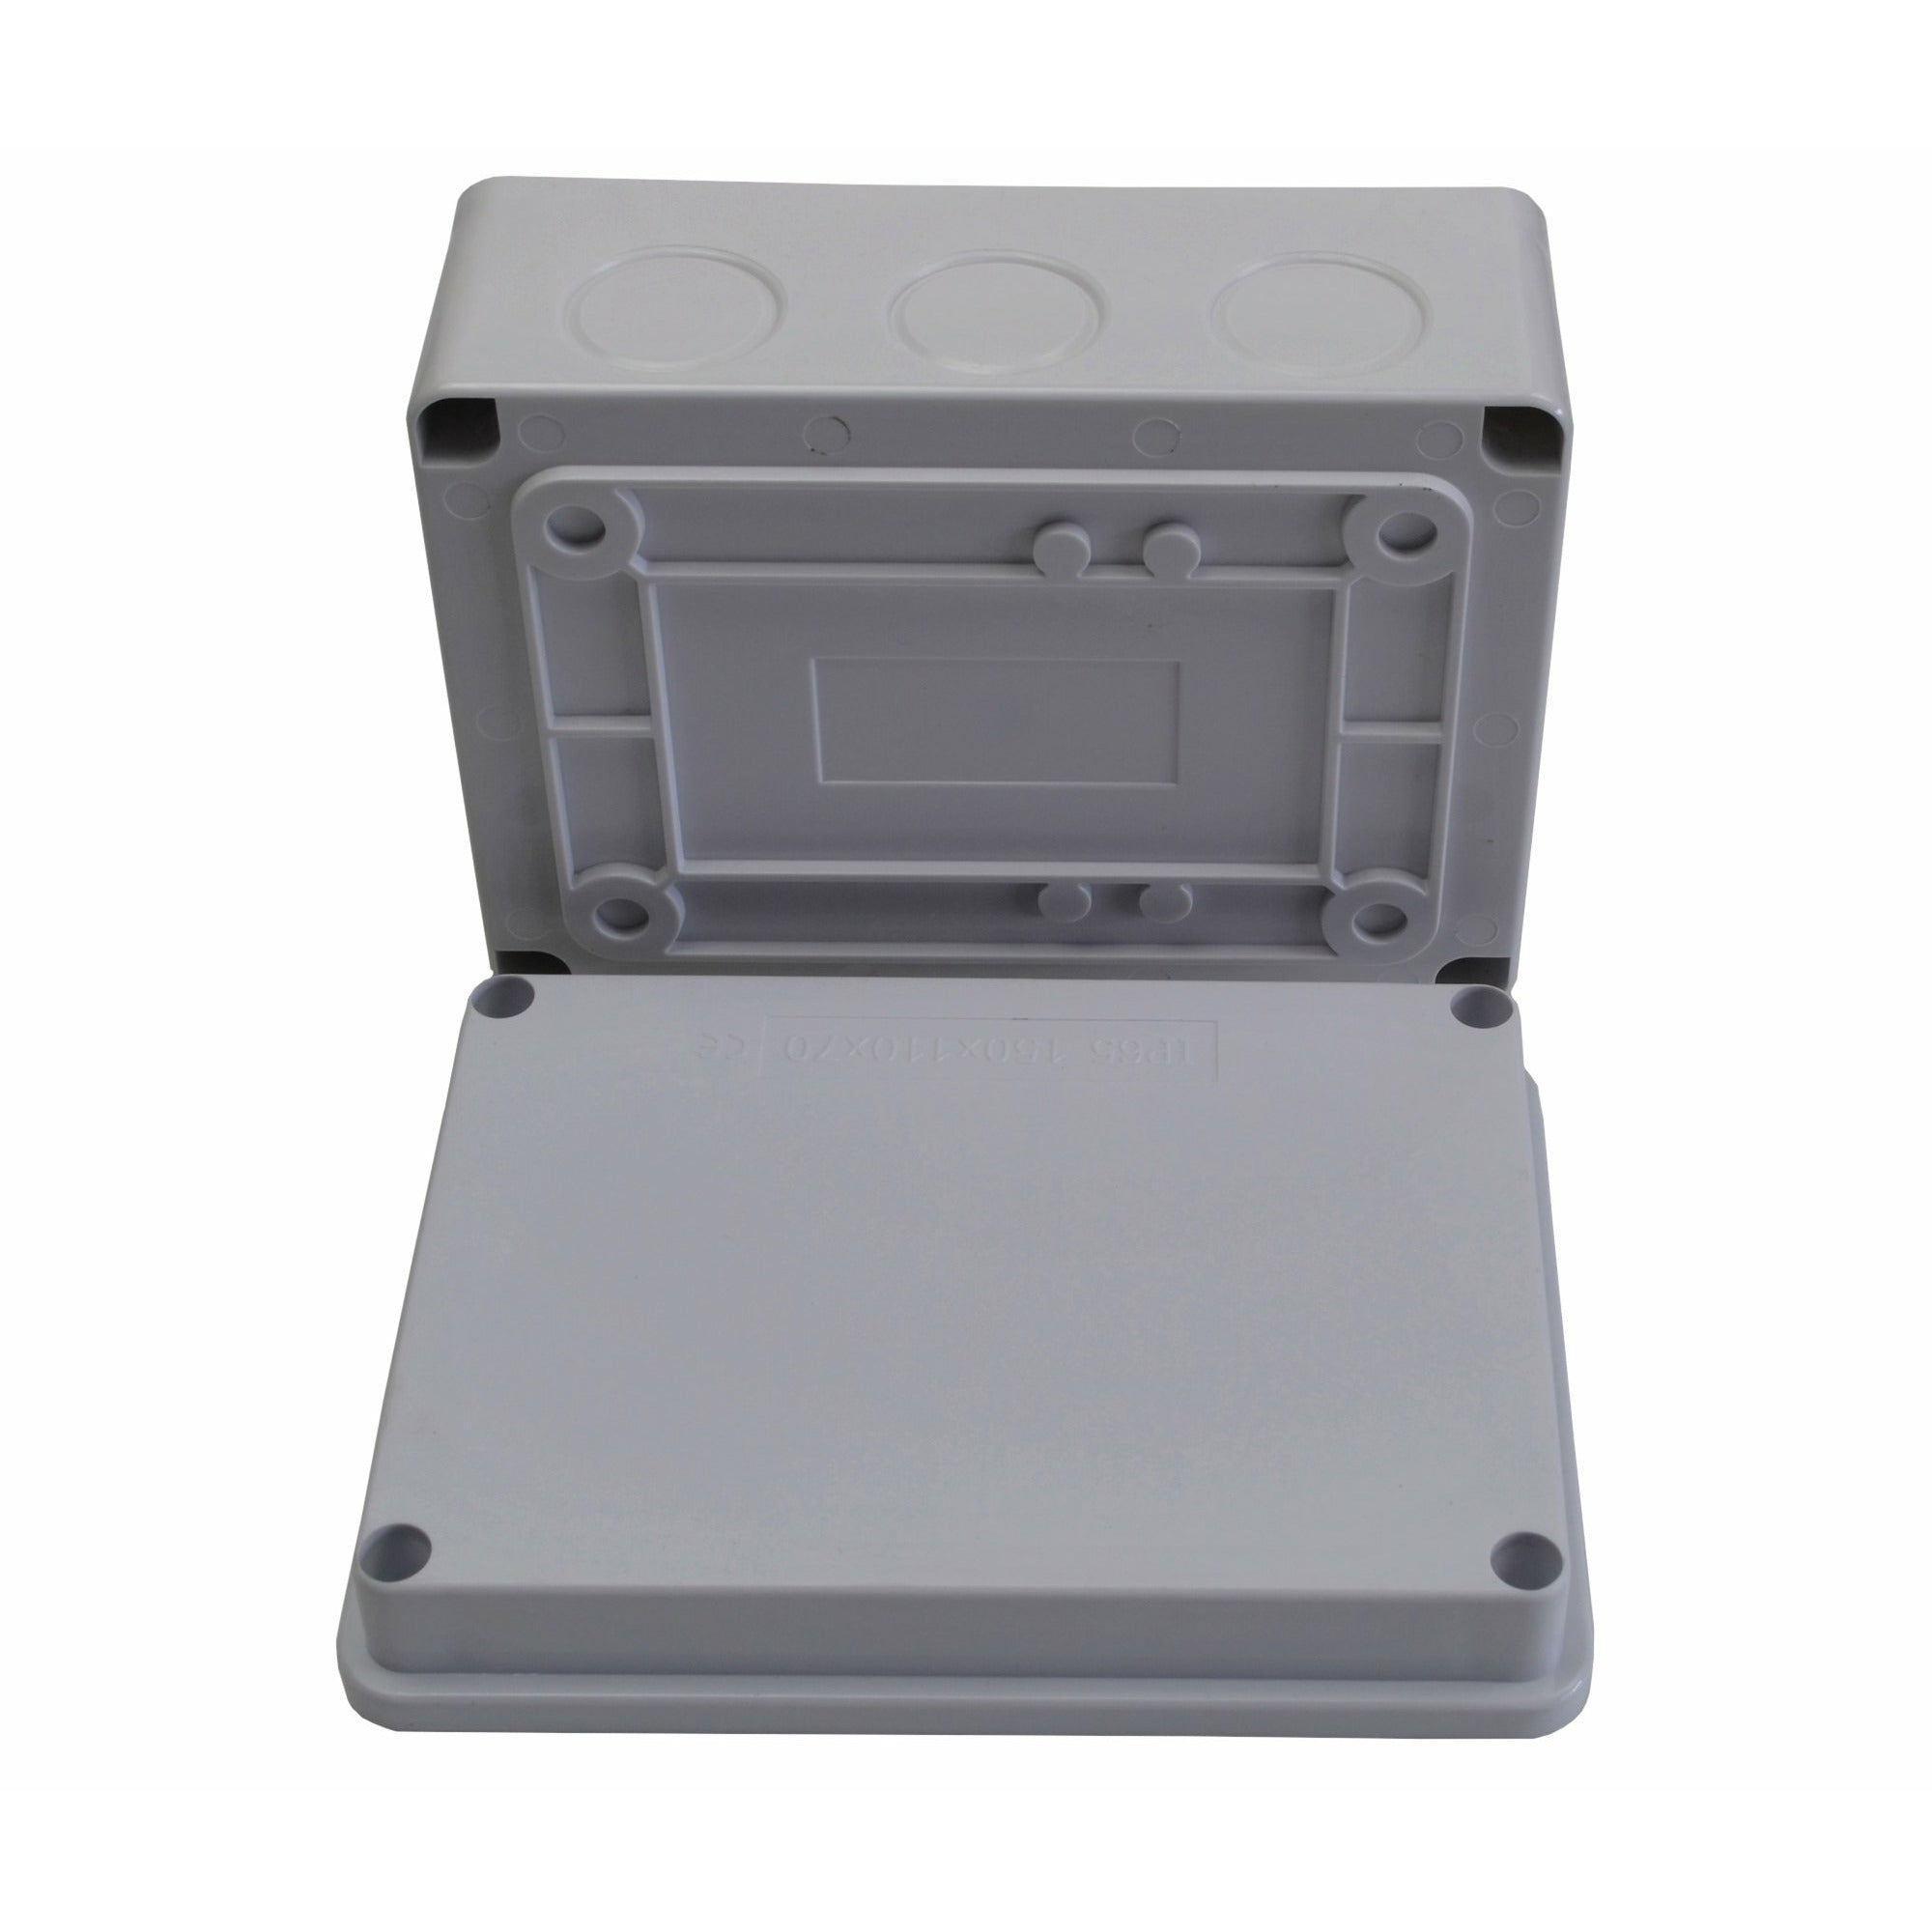 150x110x70 mm no grommet IP65 Waterproof Junction Box